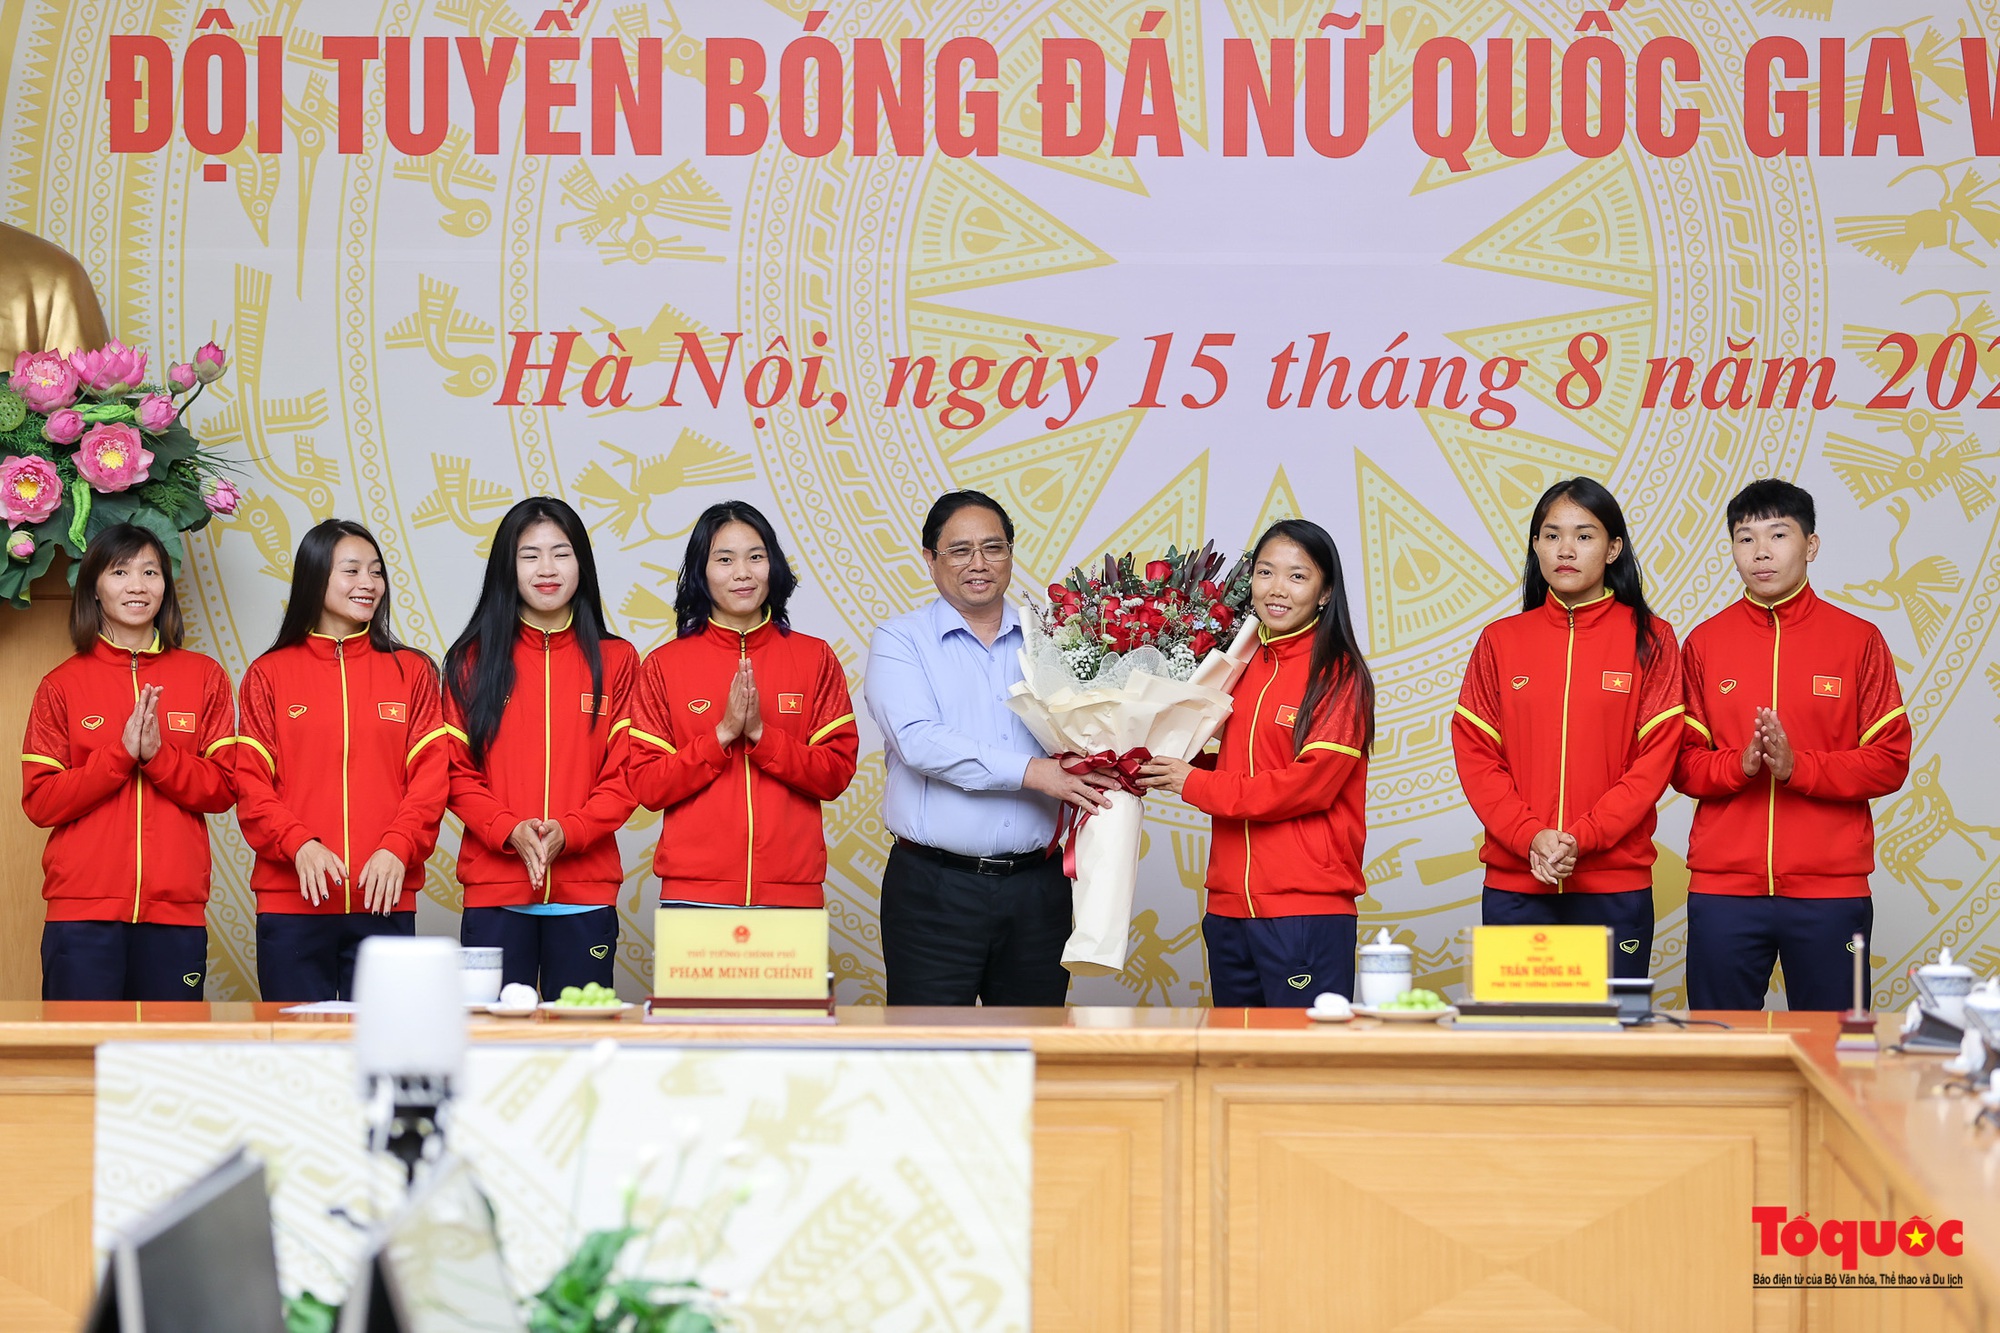 Thủ tướng: Chúng ta tự hào, xúc động khi Quốc kỳ và Quốc ca Việt Nam lần đầu tiên được kéo và vang lên tại một kỳ World Cup bóng đá nữ - Ảnh 4.